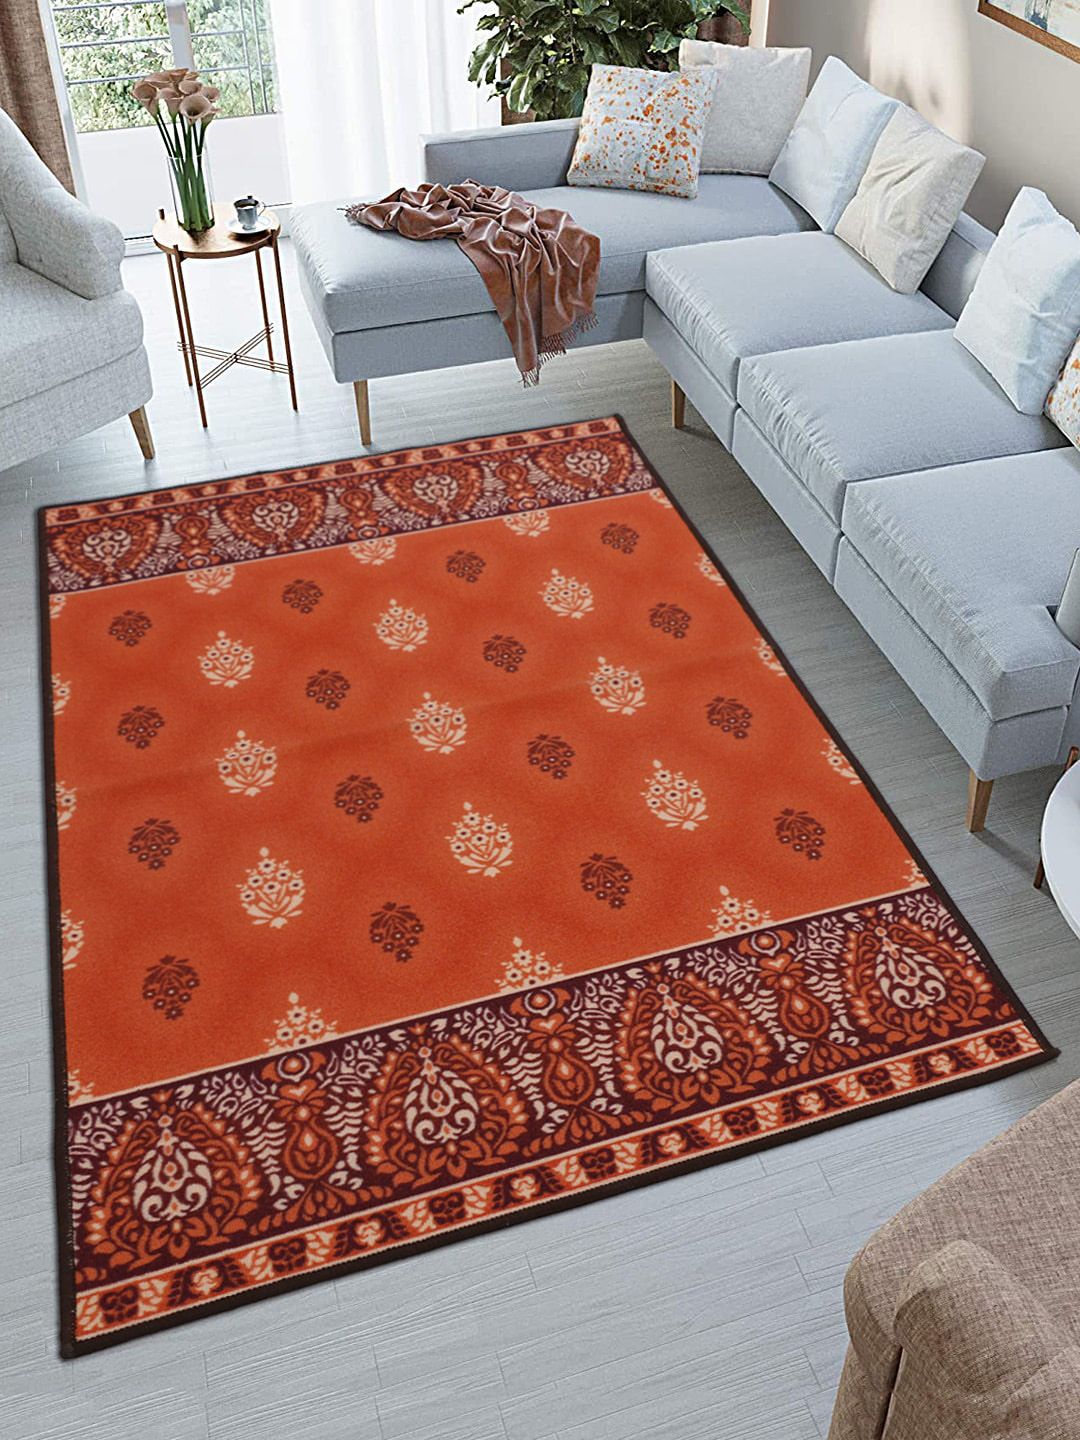 RUGSMITH Orange & White Floral Printed Premium Quality Anti-Skid Carpet Price in India